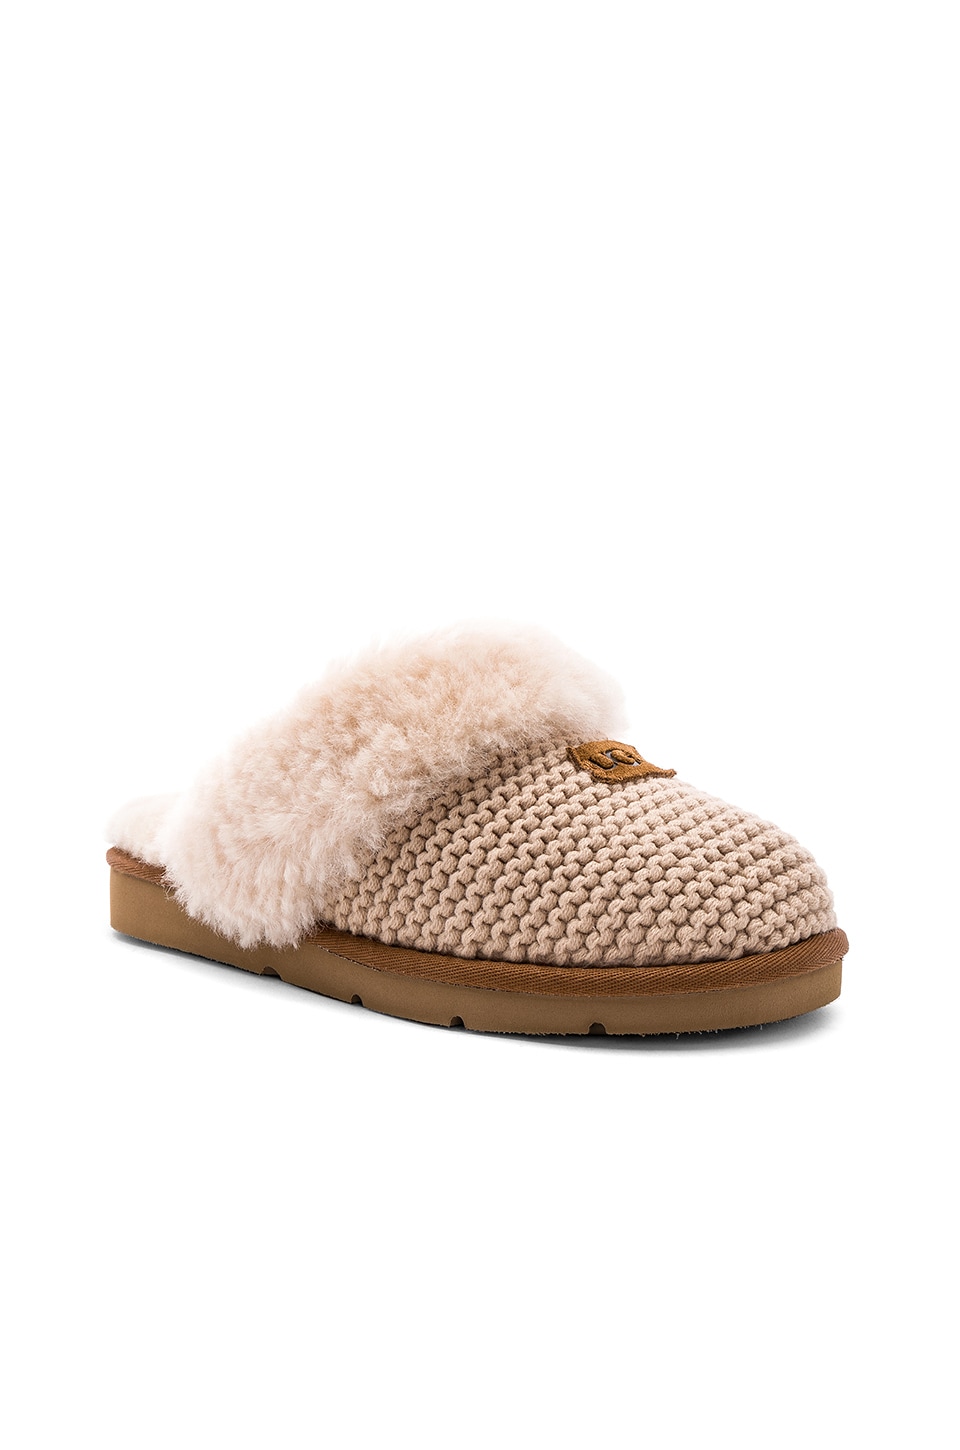 UGG Cozy Knit Slipper in Cream | REVOLVE